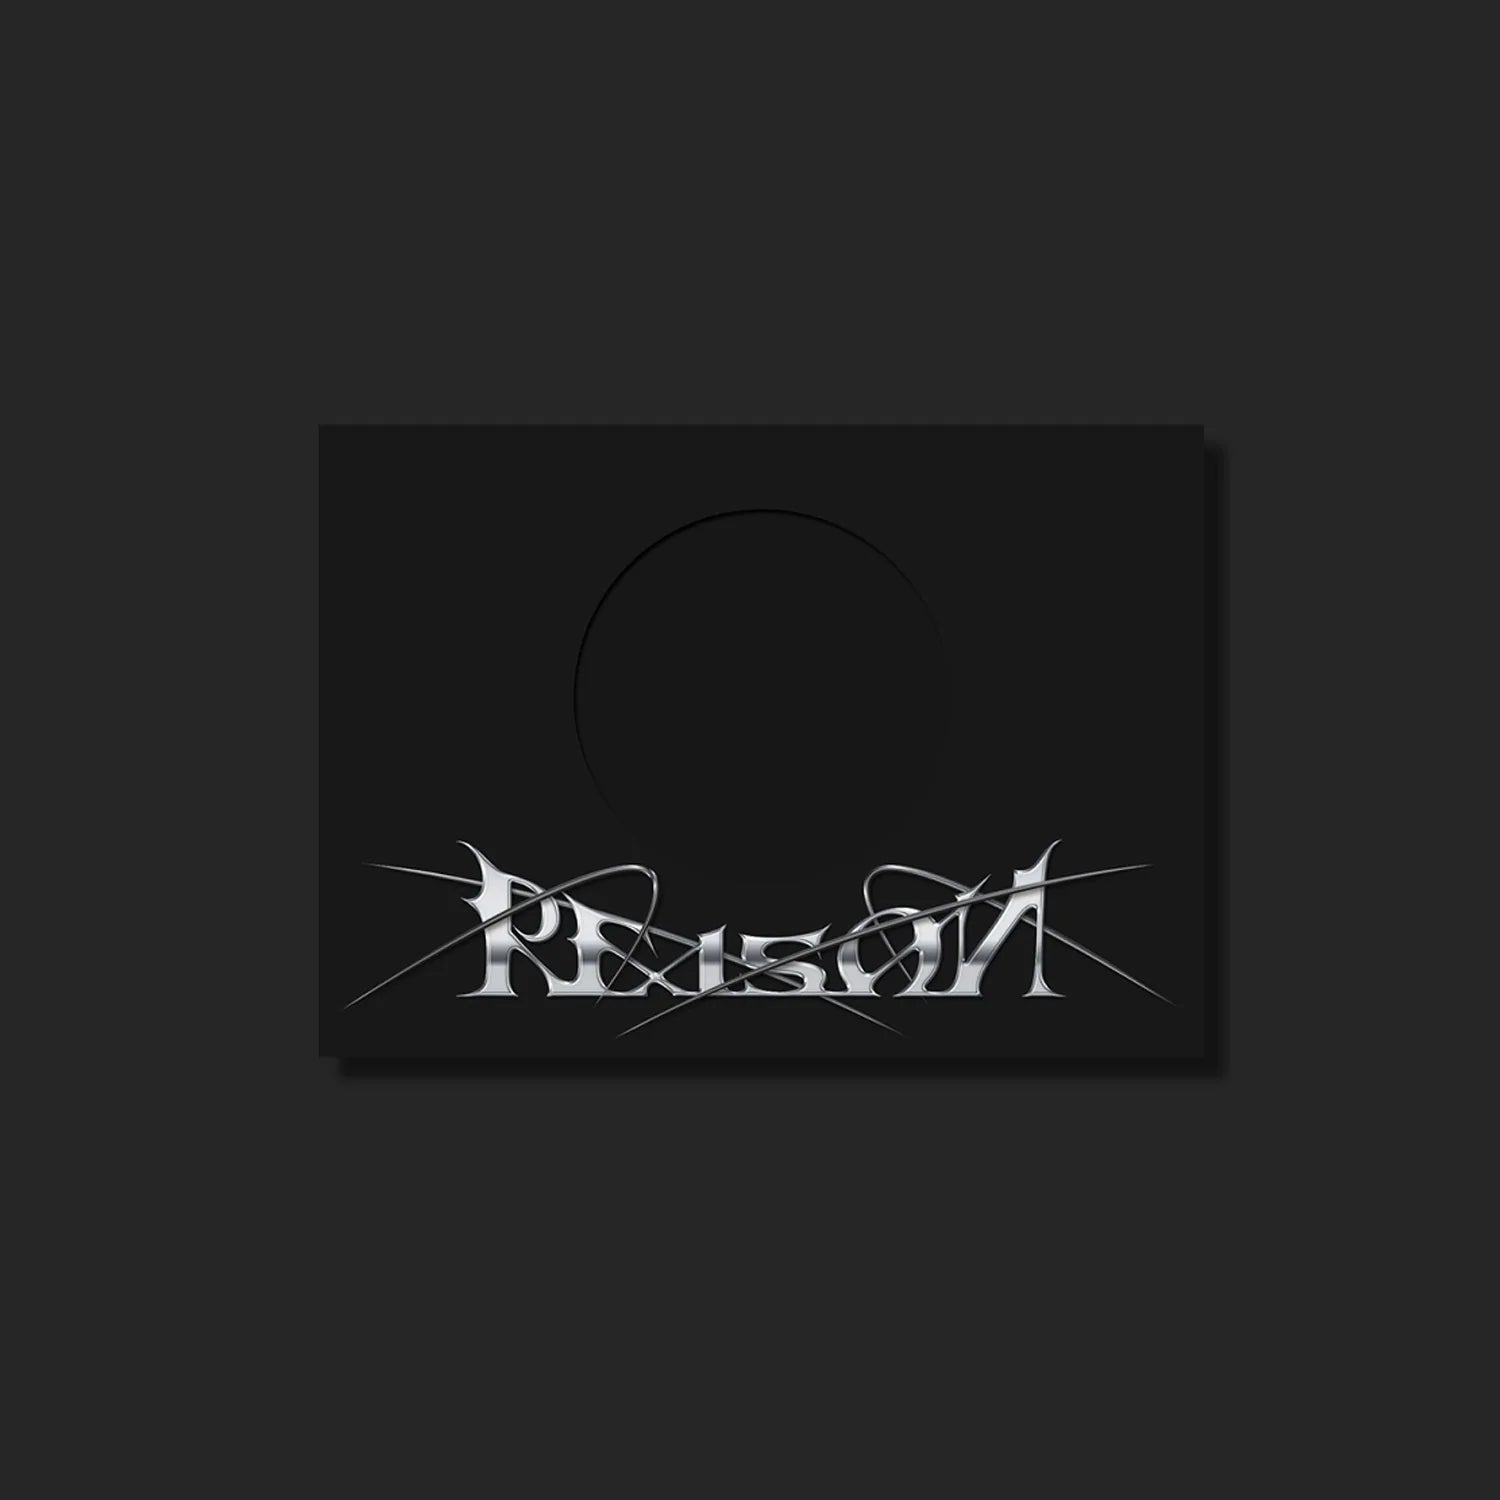 MONSTA X 12TH MINI ALBUM 'REASON' VERSION 1 COVER